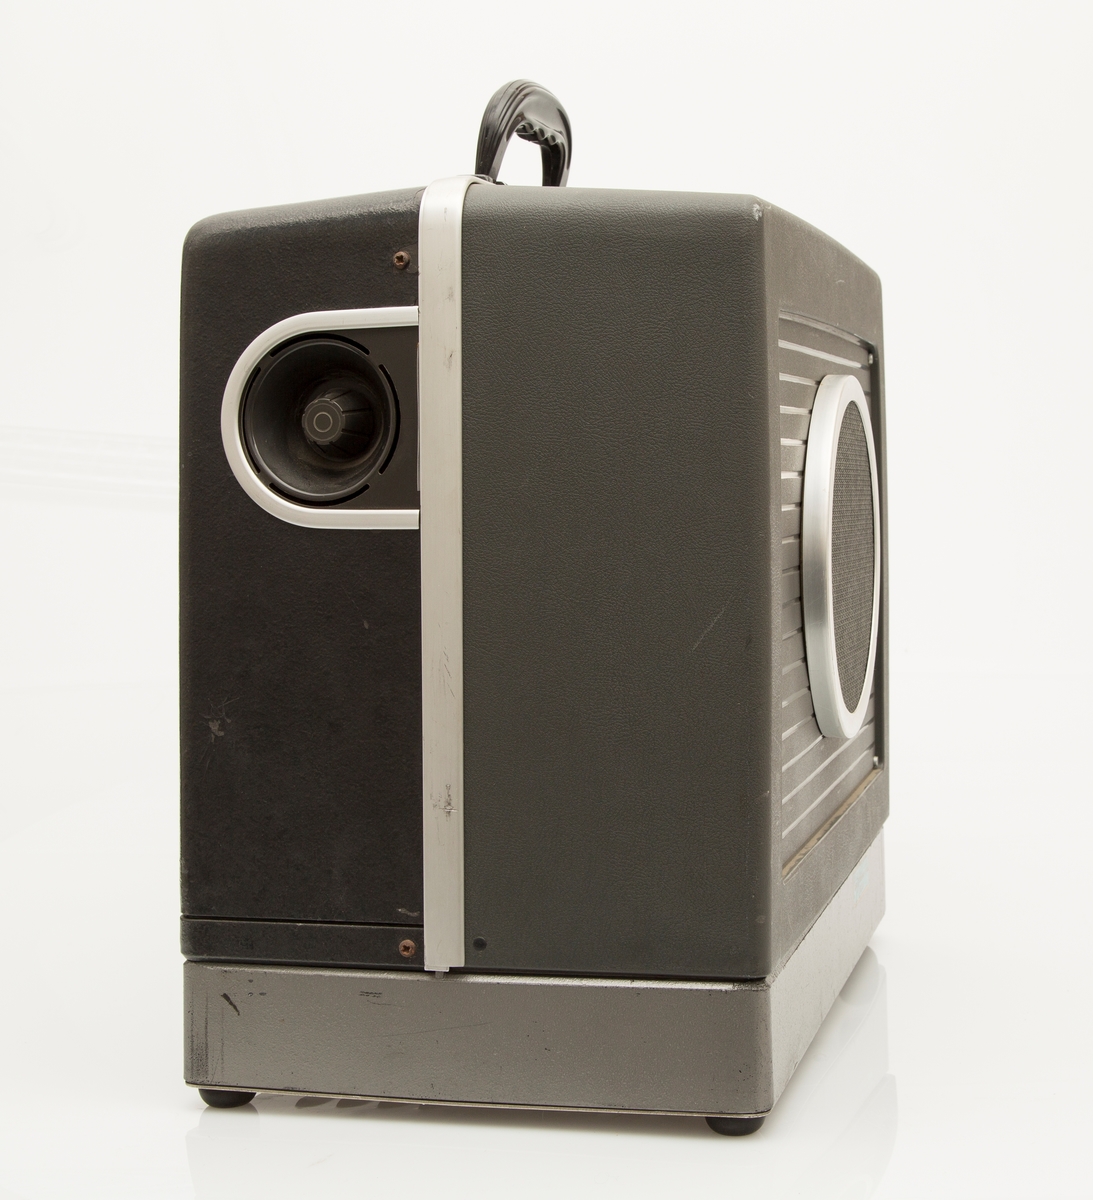 Filmframviser fra Bell & Howell, Filmosound 16 mm projector, med avtagbar høyttaler som fungerer som lokk til framviserkassen. Det følger med et ekstra lokk med høyttaler.